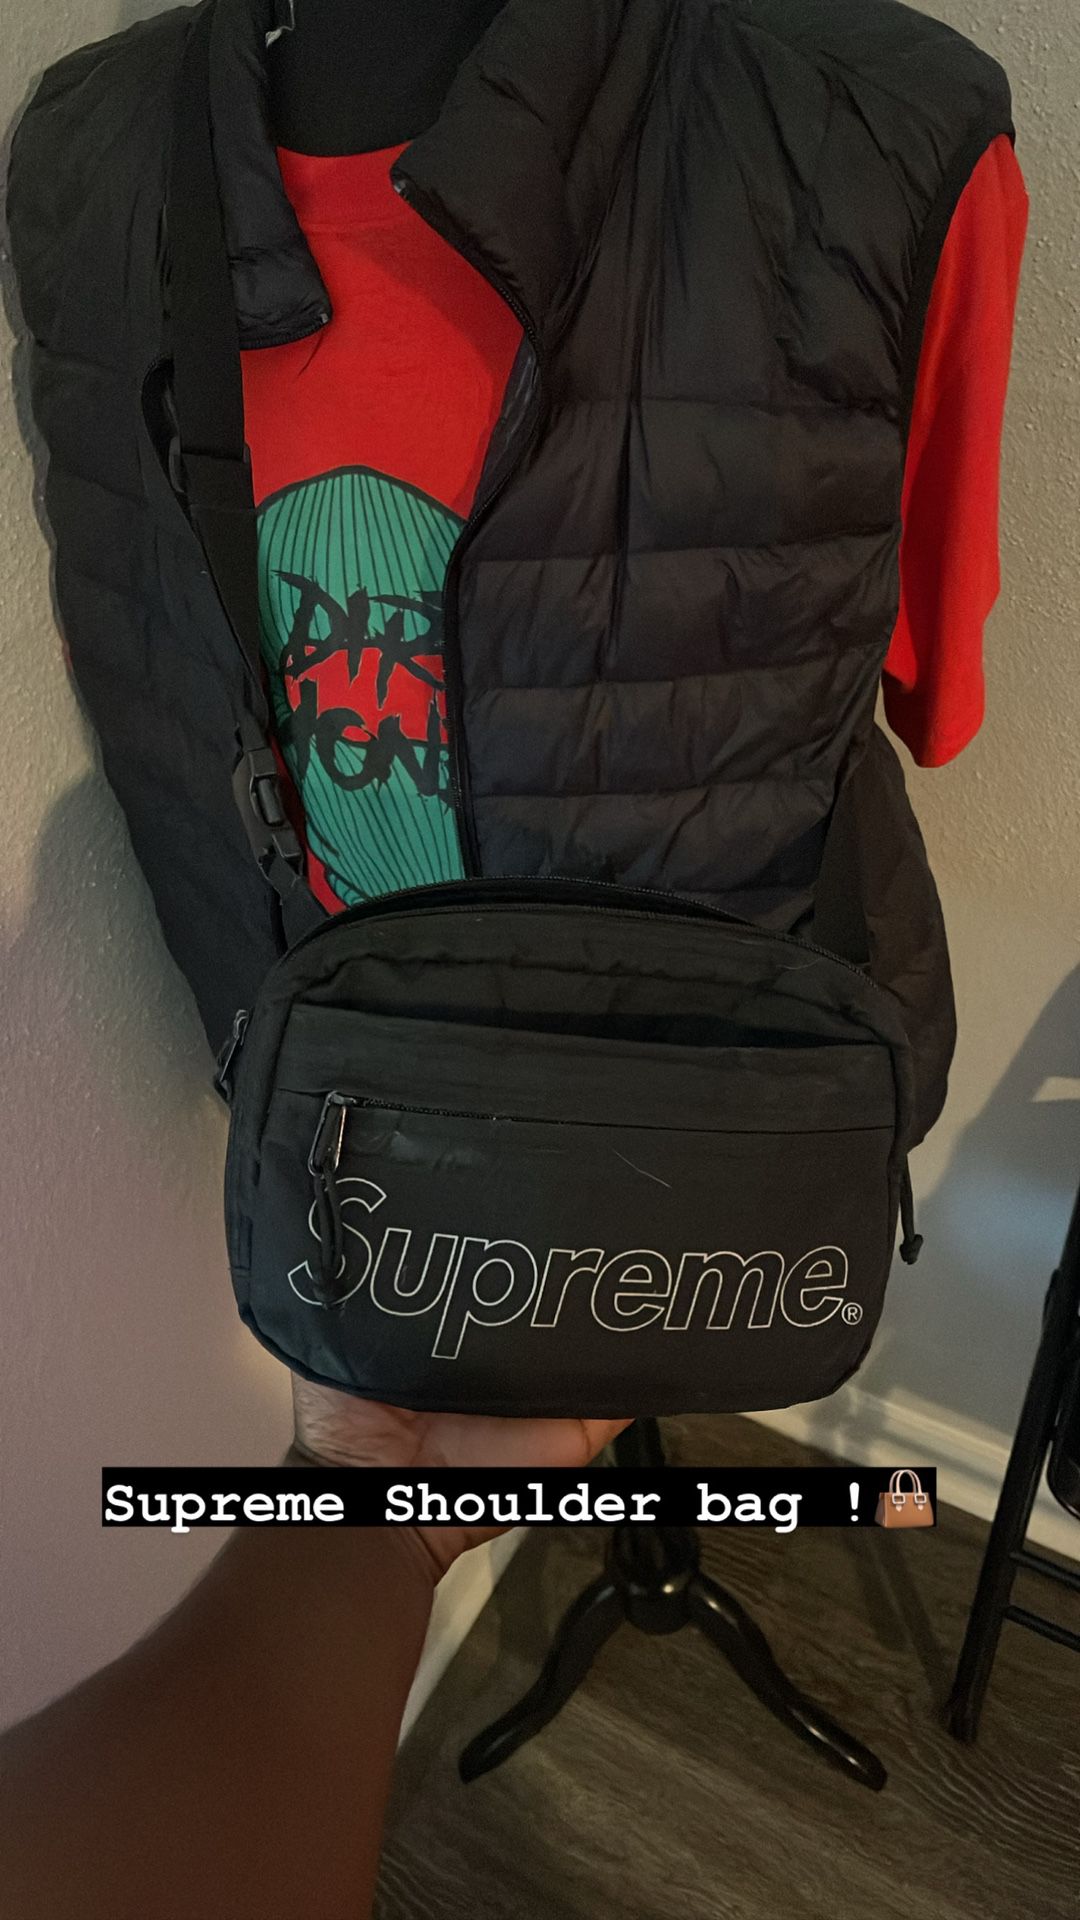 Supreme Shoulder bag FW18